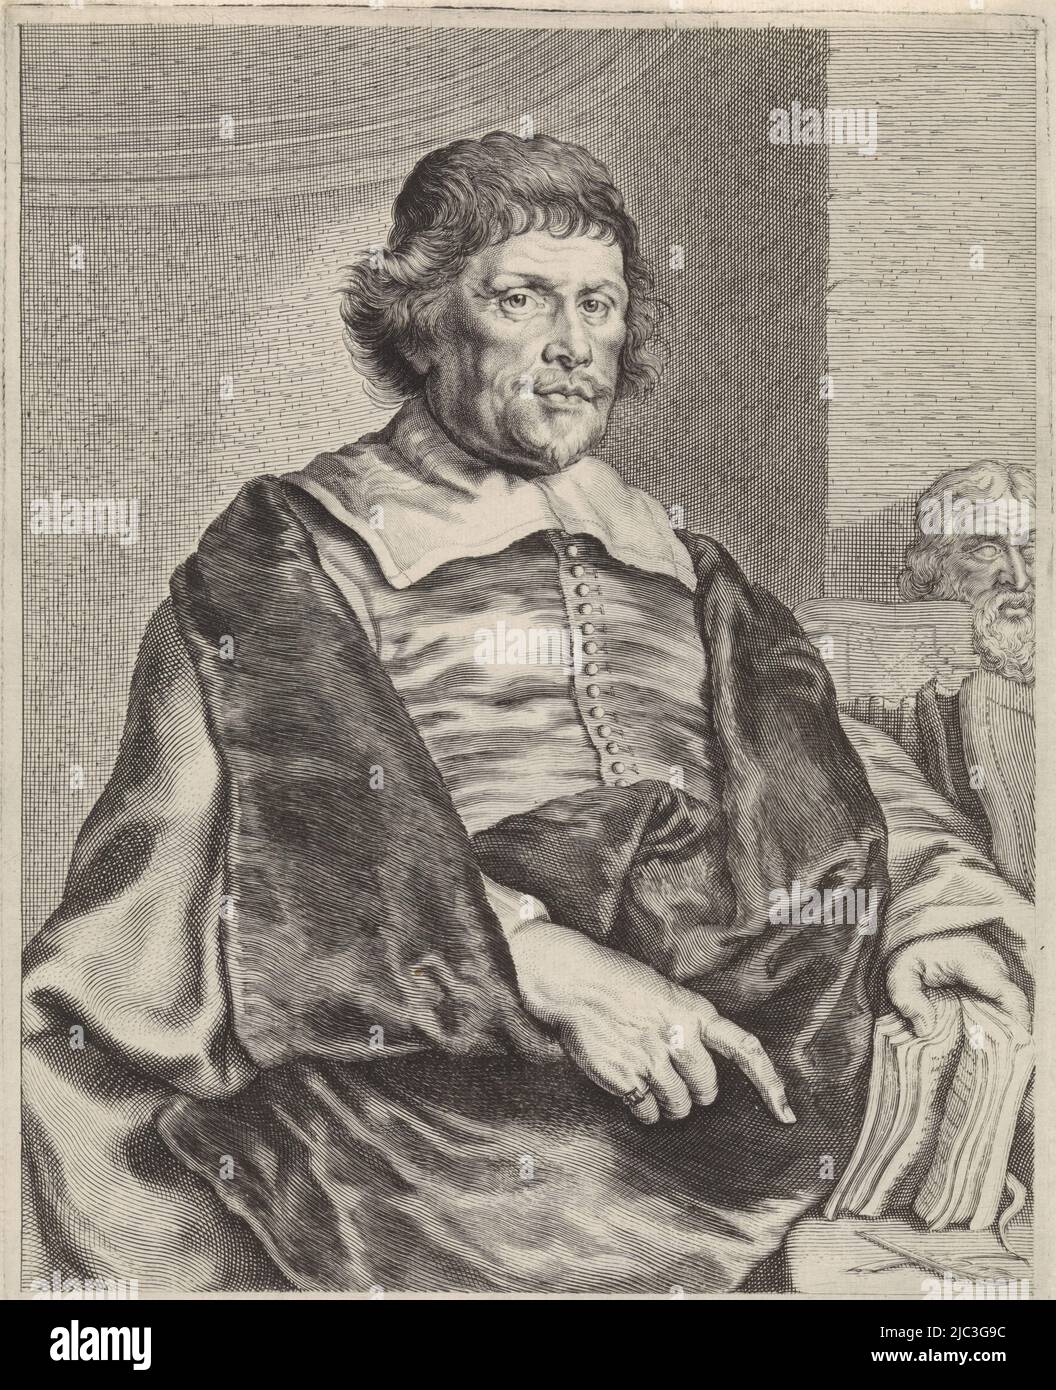 Portrait du poète et écrivain Caspar van Baerle, portrait de Caspar van Baerle, imprimerie: Theodor Matdam, dessinateur intermédiaire: Joachim von Sandrart (I), pays-Bas du Nord, 1616 - 1676, papier, gravure, h 280 mm × l 198 mm Banque D'Images